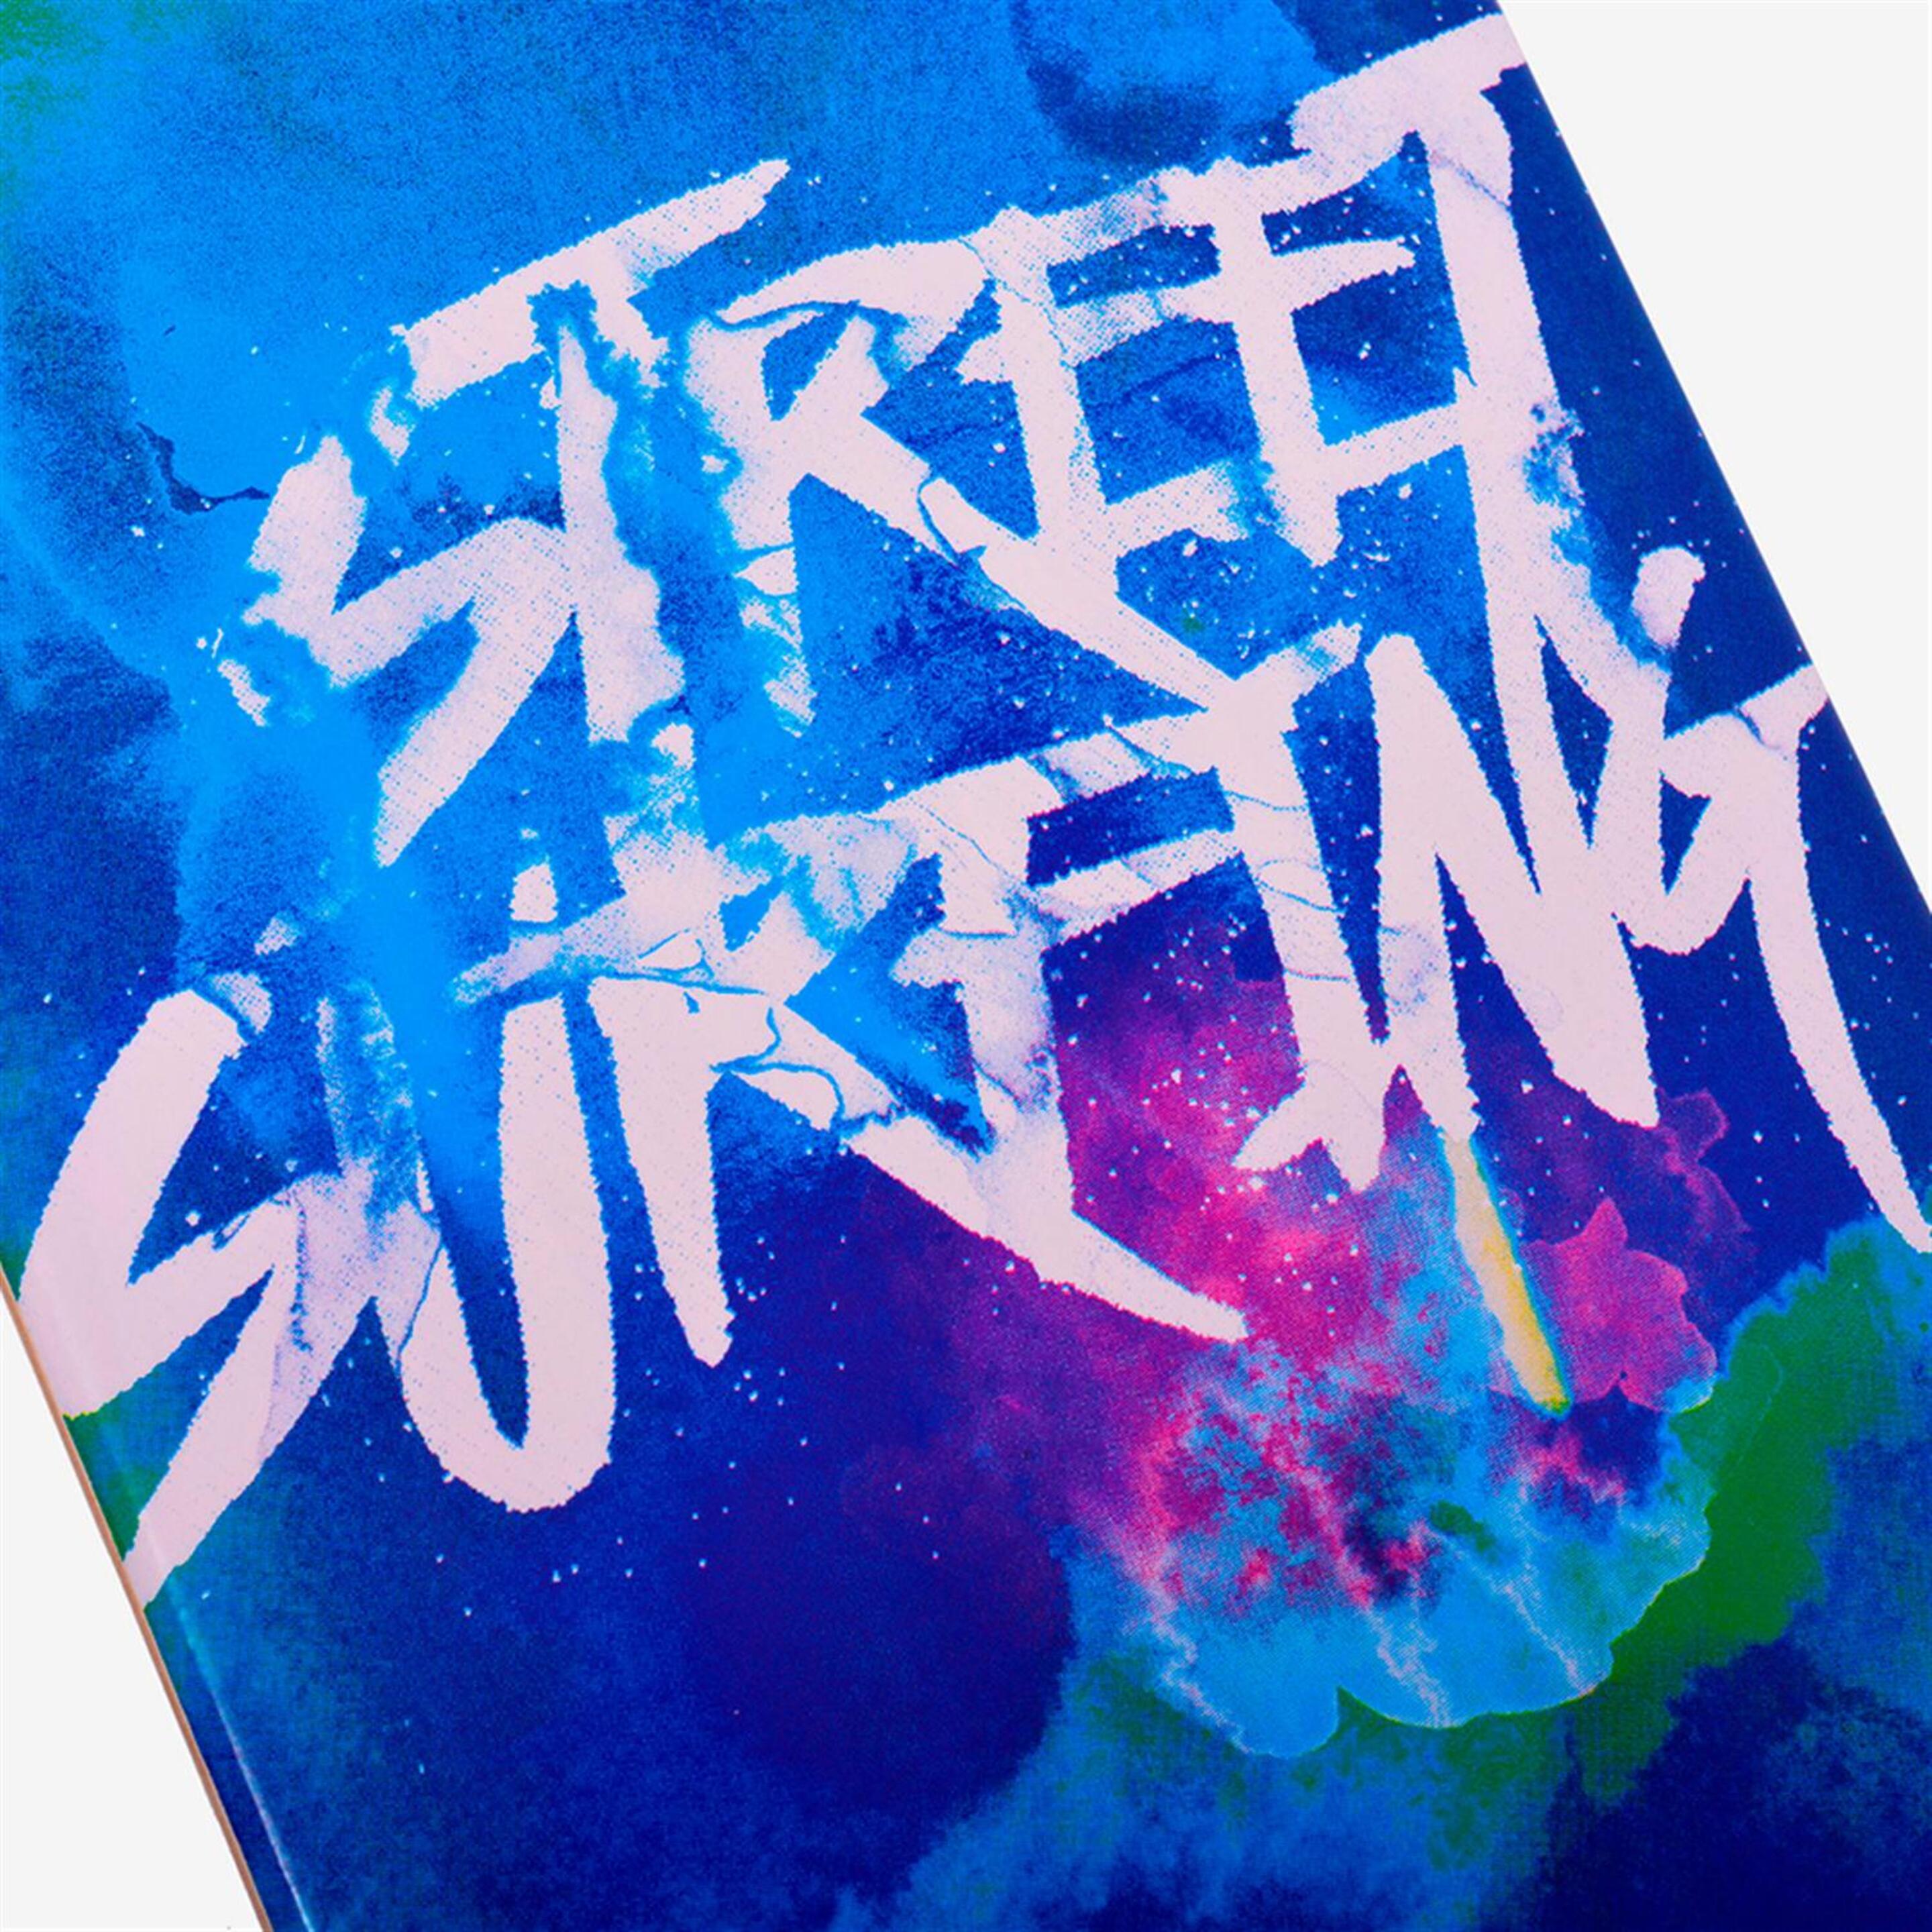 Skate Street Surfing Dk Freeride